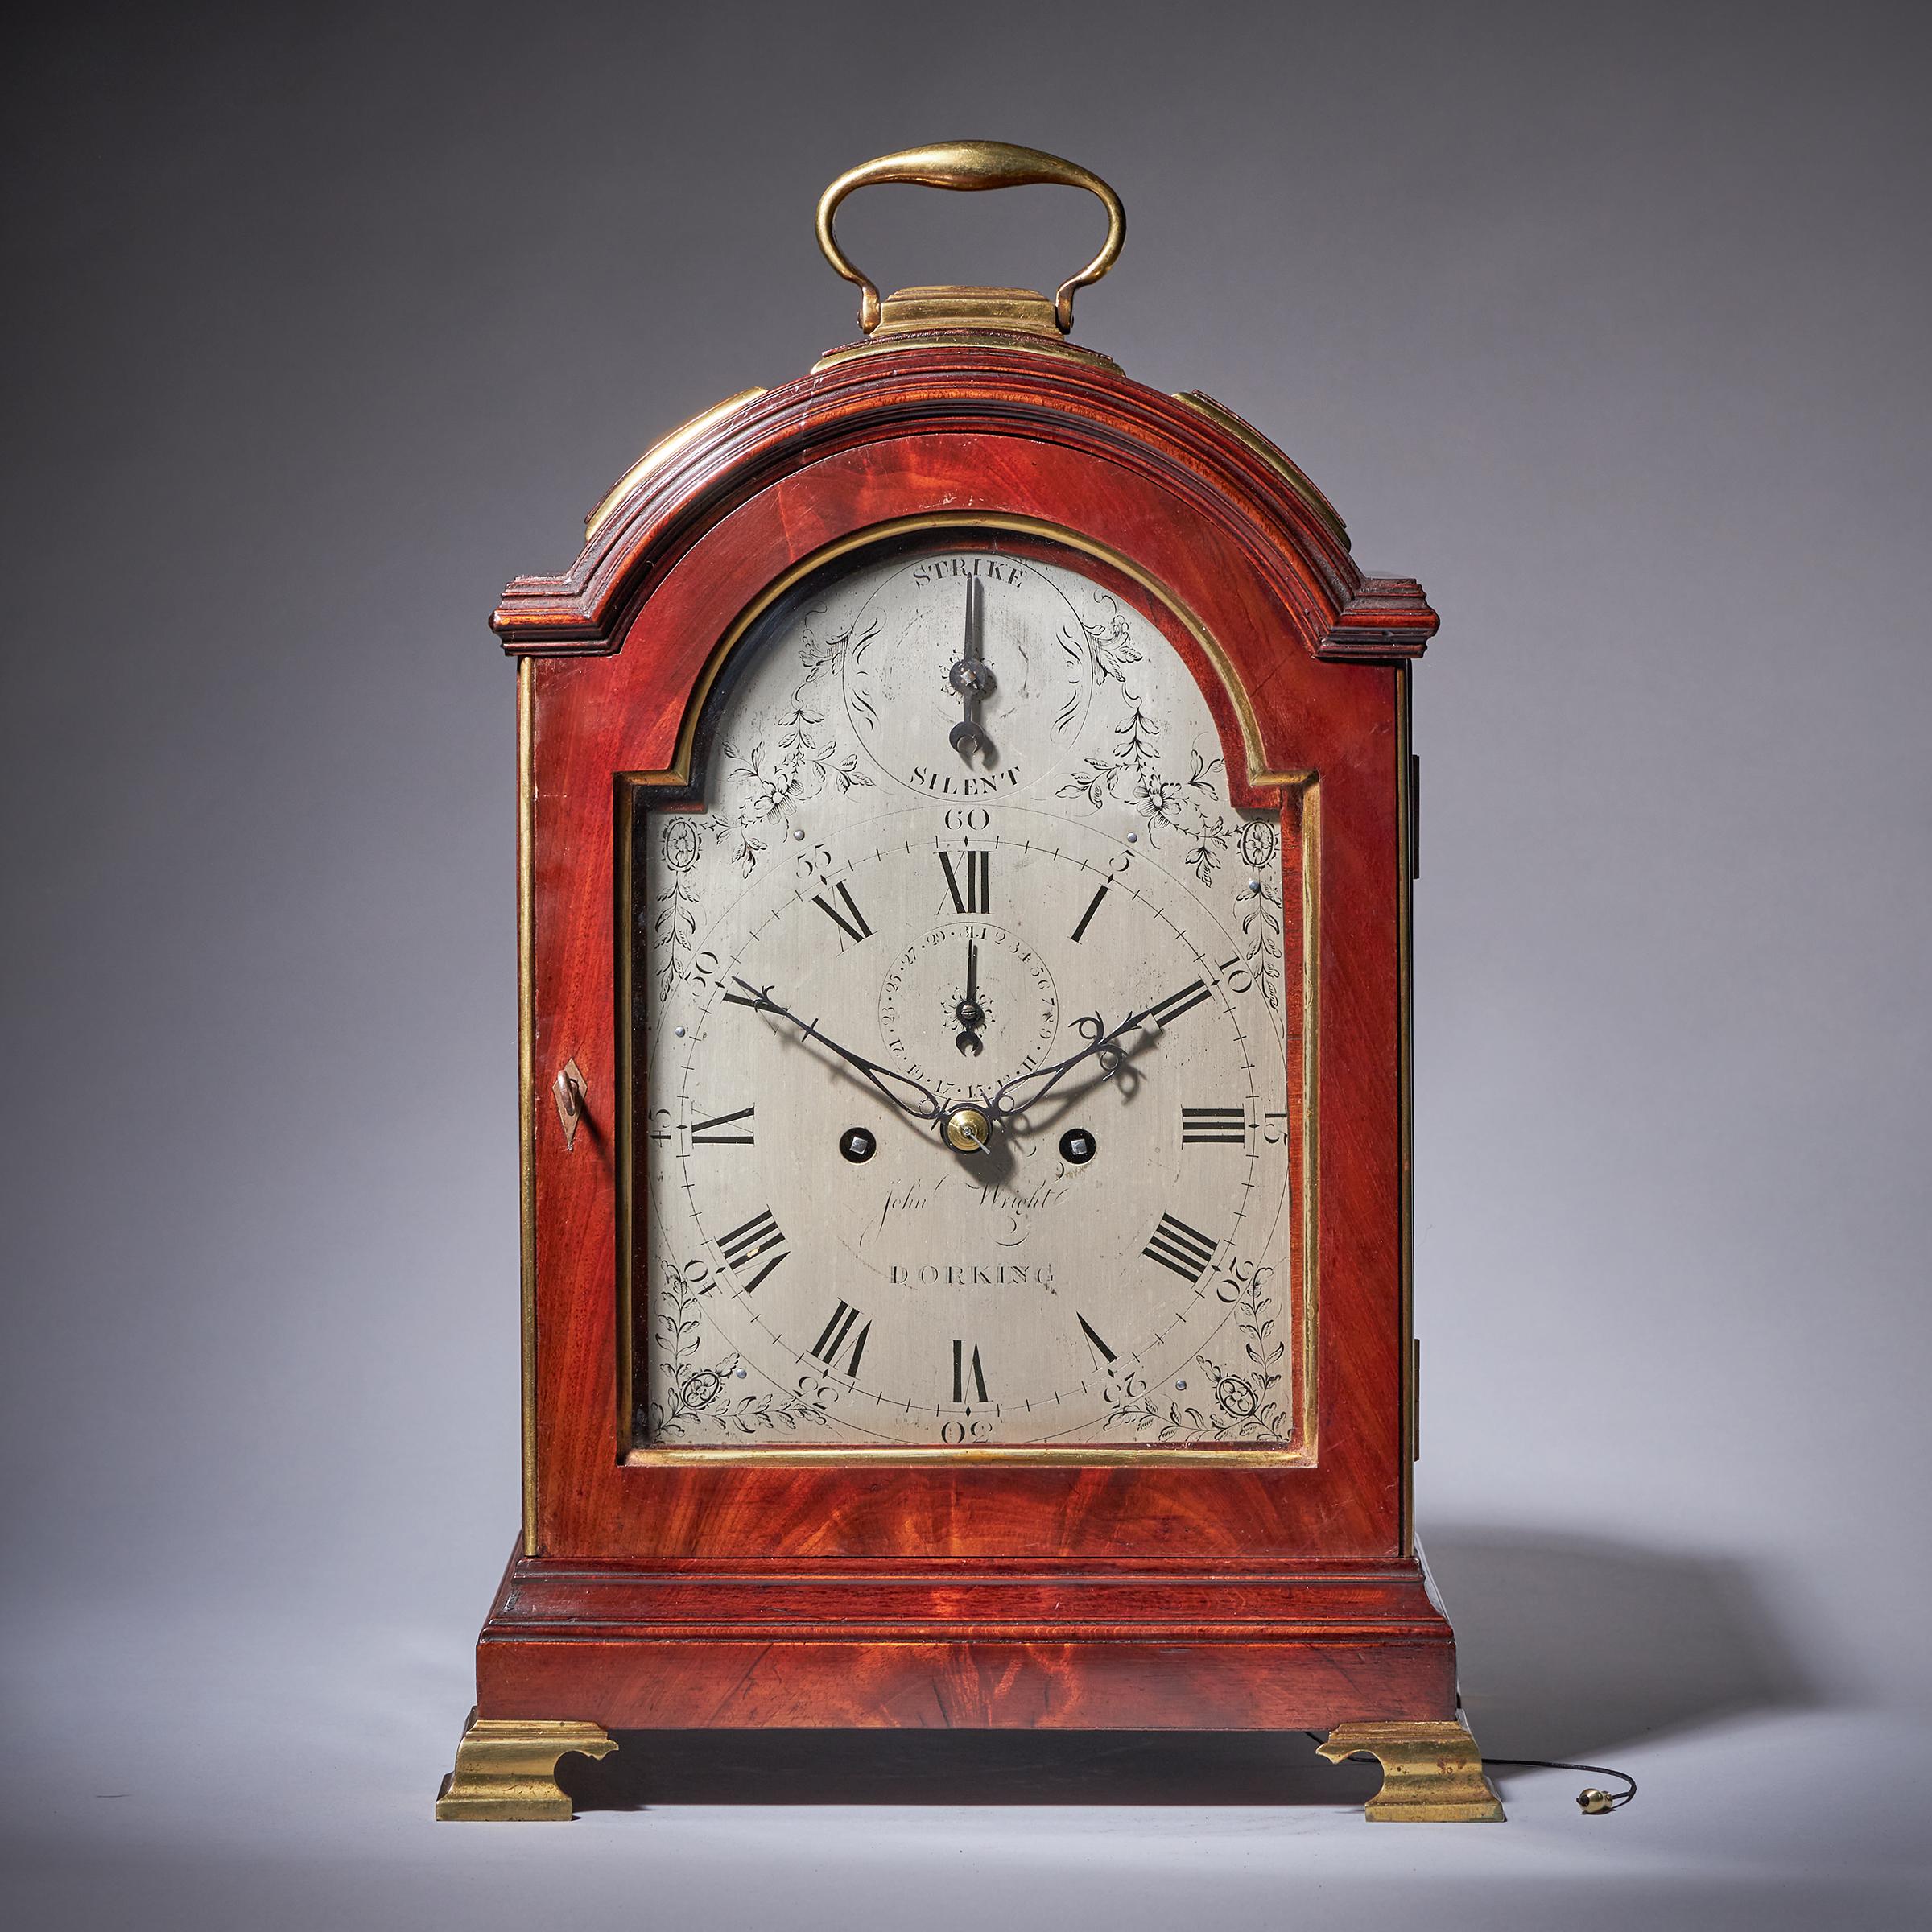 pendule à trois cadrans en acajou figuré du XVIIIe siècle de John Wright Dorking, circa 1780. Angleterre
 
Une très belle horloge anglaise, fabriquée vers 1780, signée sur le cadran argenté John Wright Dorking. Le coffret en chêne plaqué d'acajou